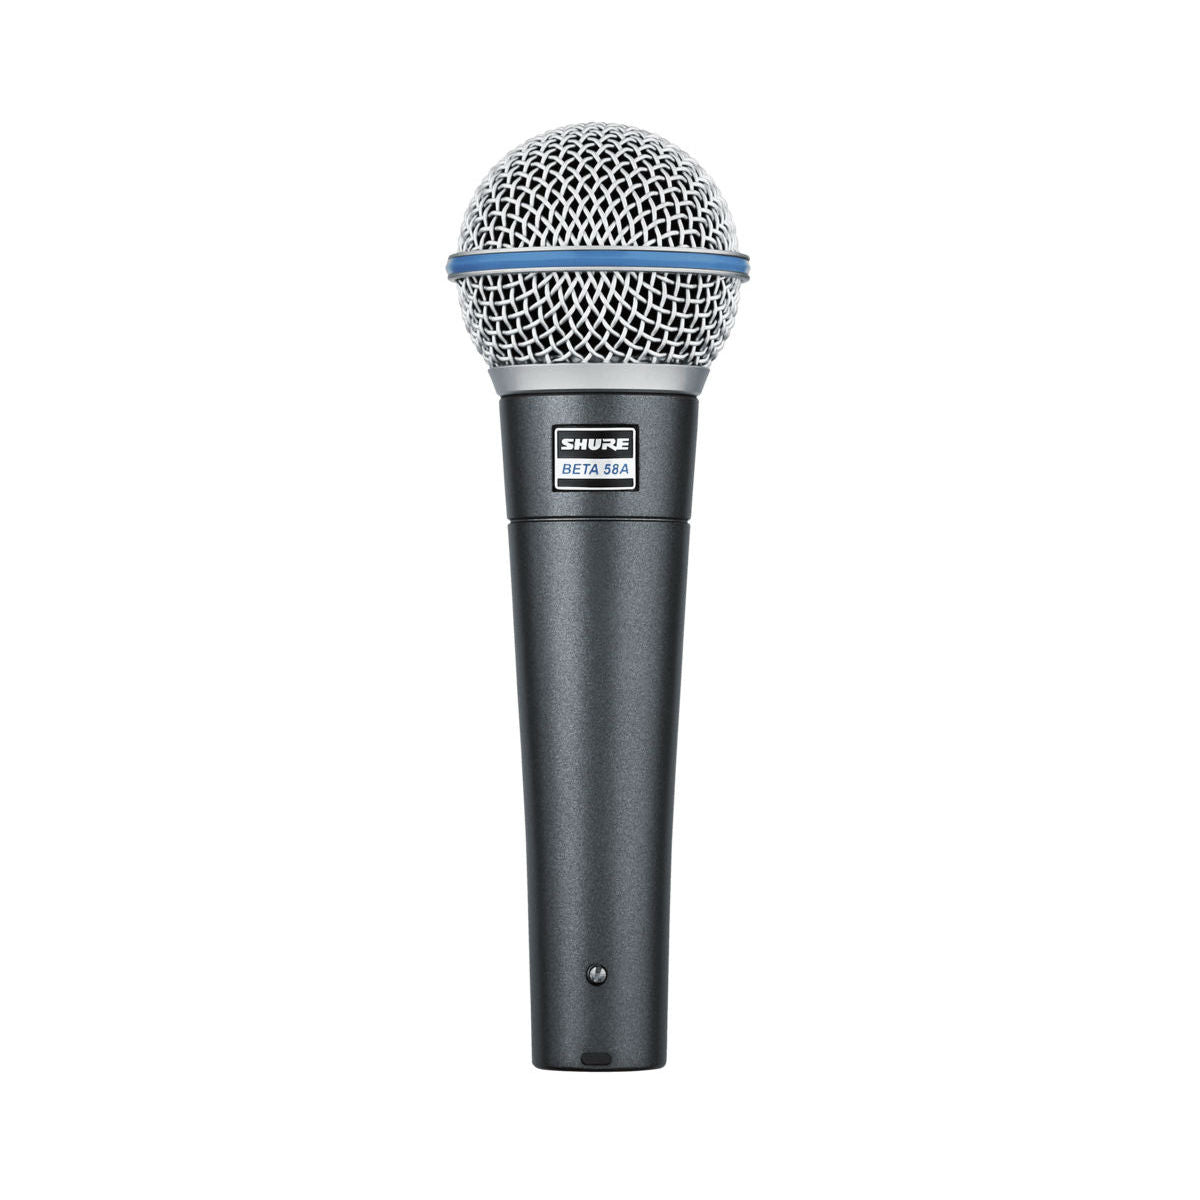 Shure Beta 58A Premium Dynamic Microphone